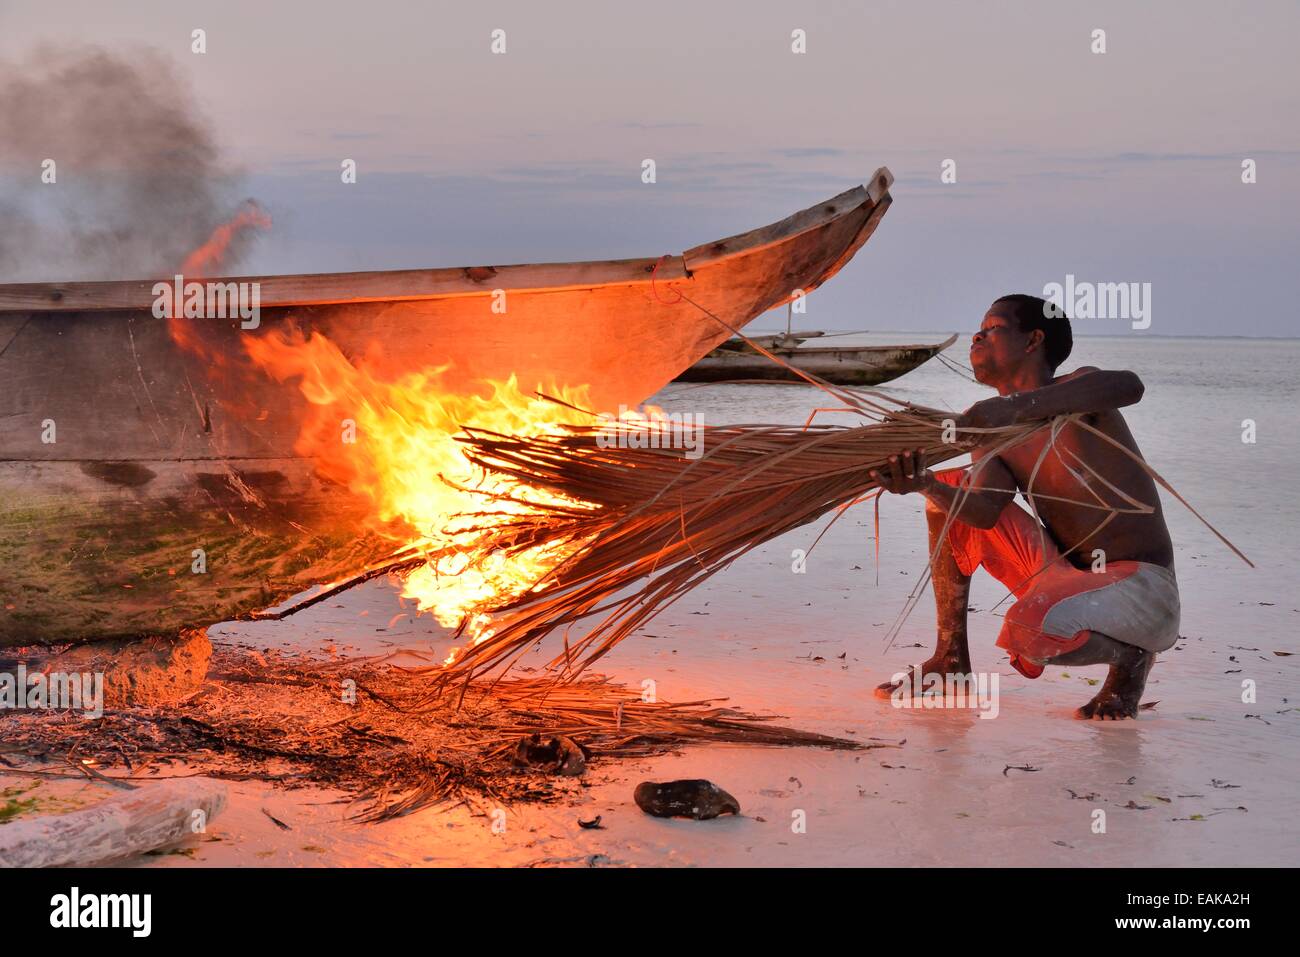 Fischer Rauchen sein Boot mit brennenden Palme Wedel, um die Oberfläche zu härten und Ungeziefer, Dongwe Strand, Dongwe, Zanzibar entfernen Stockfoto